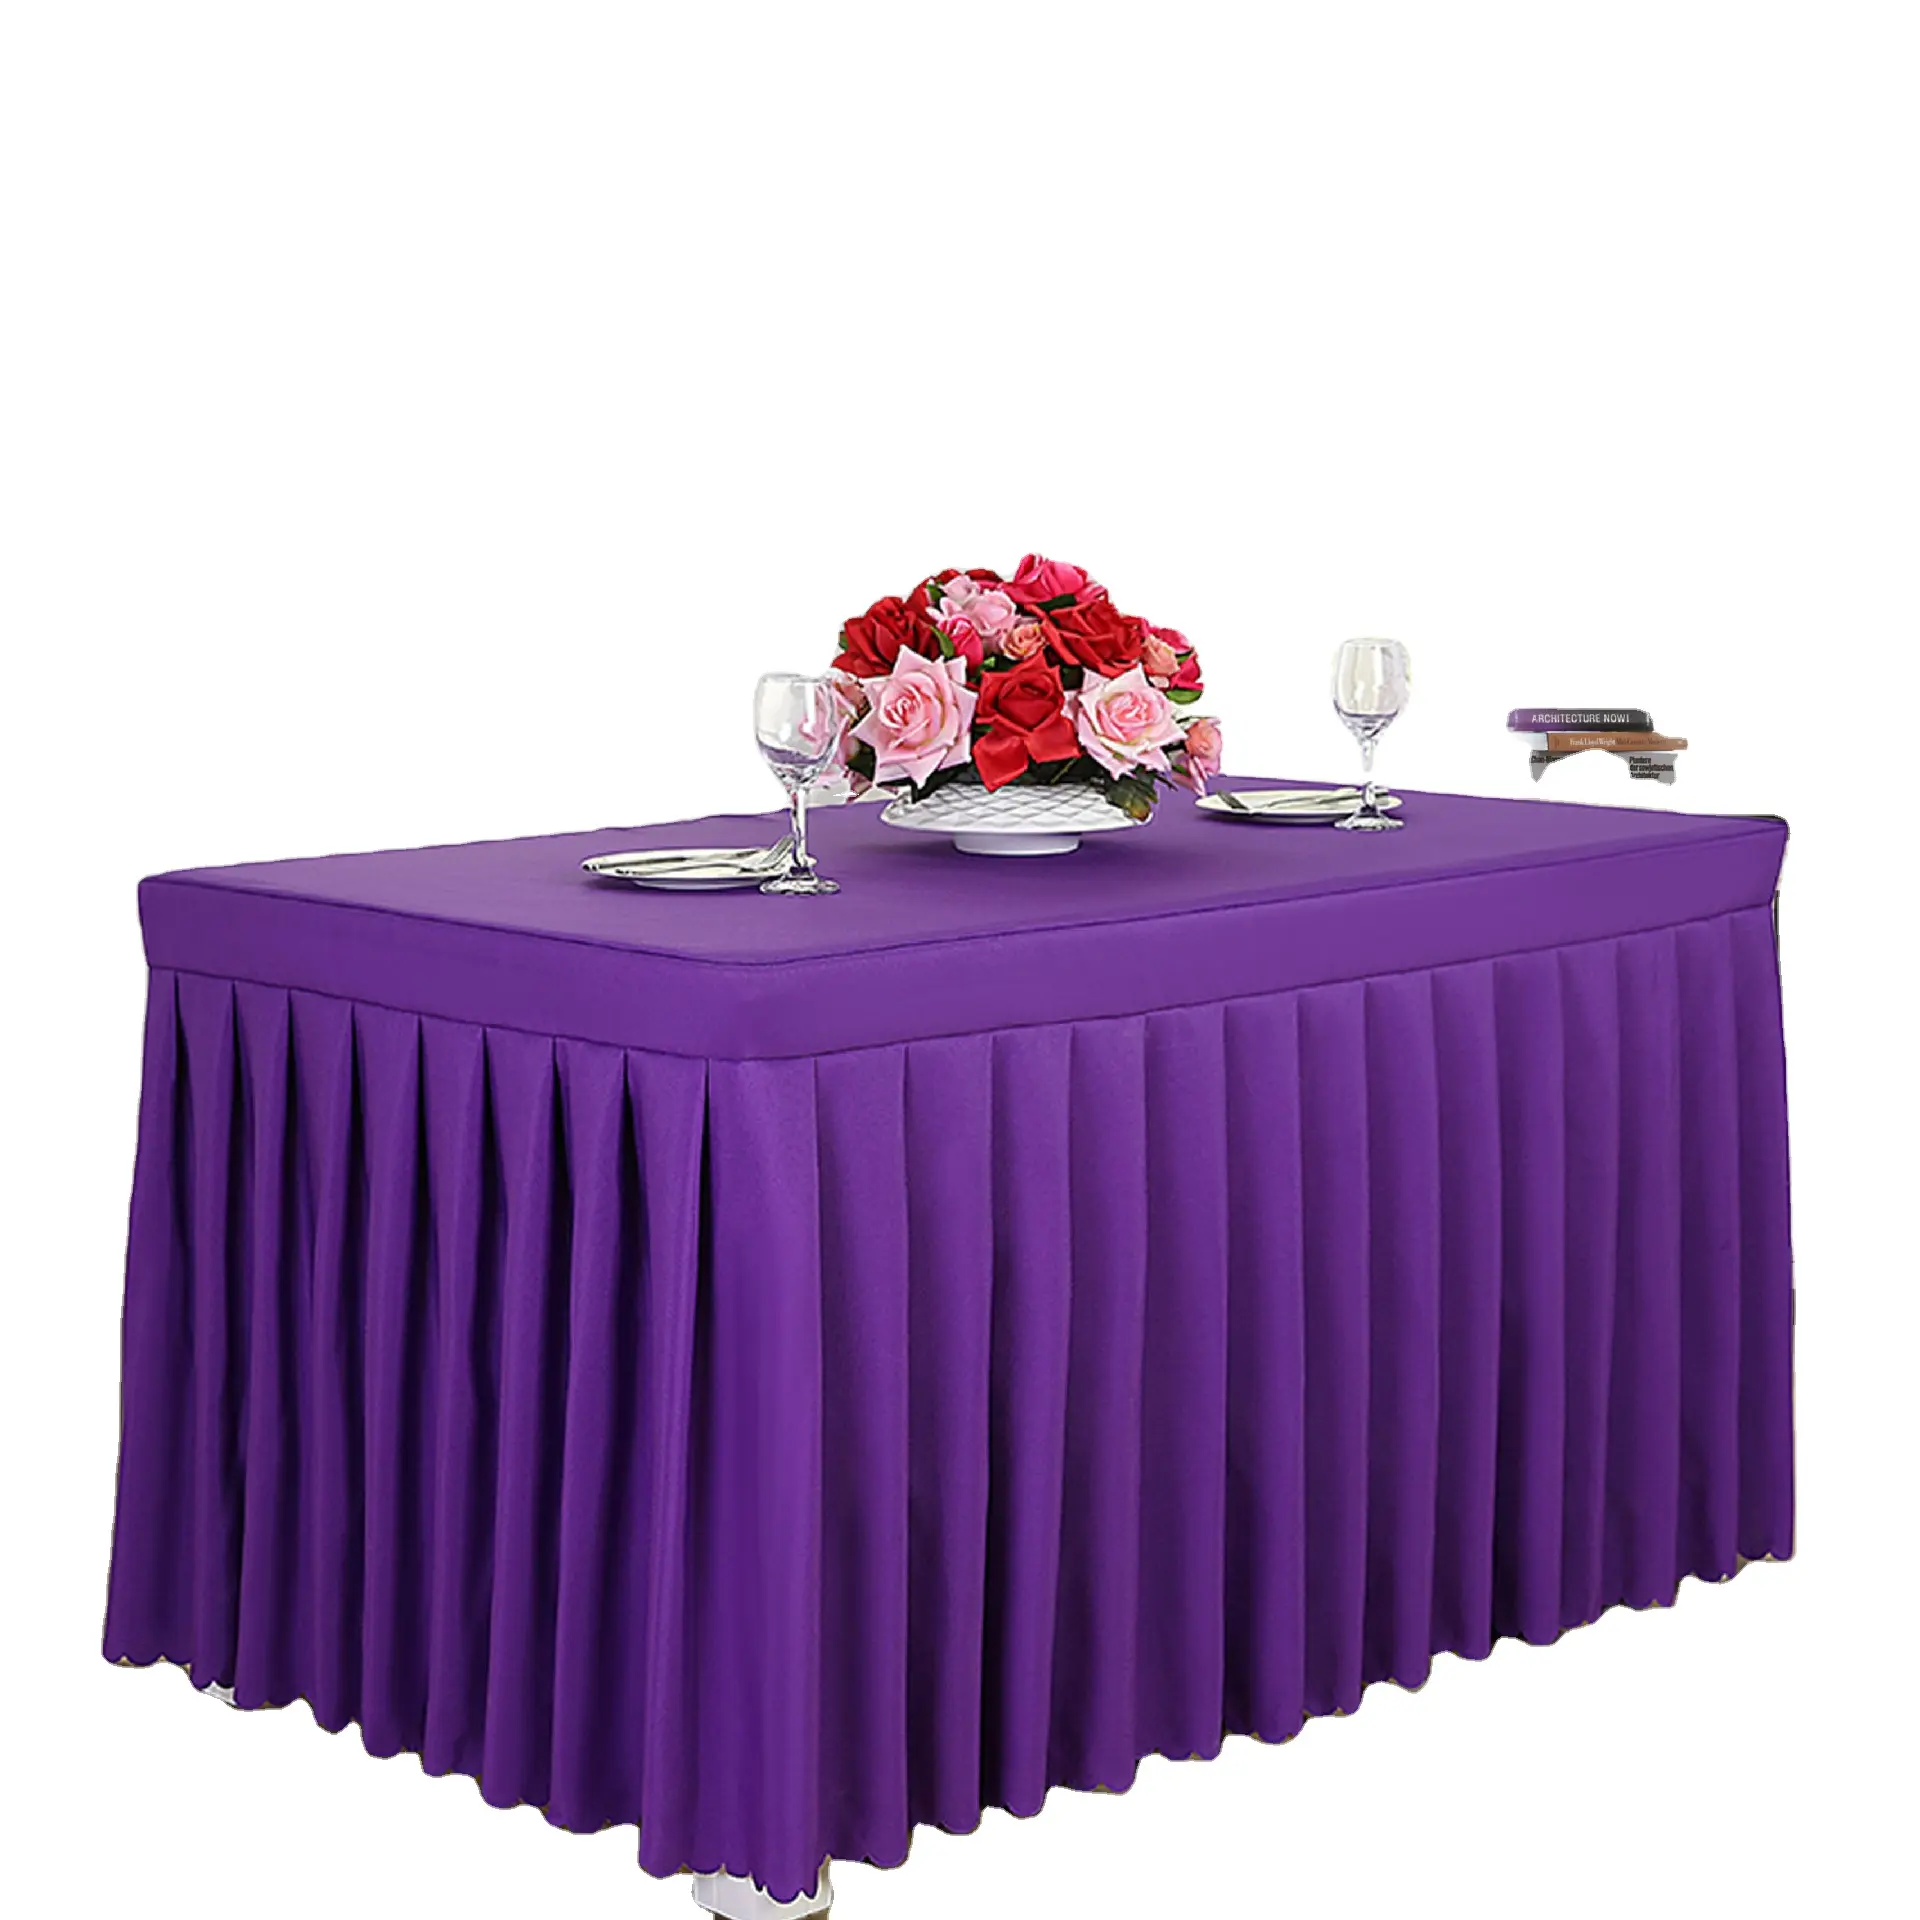 正方形のテーブル用の豪華な紫色のテーブルクロス